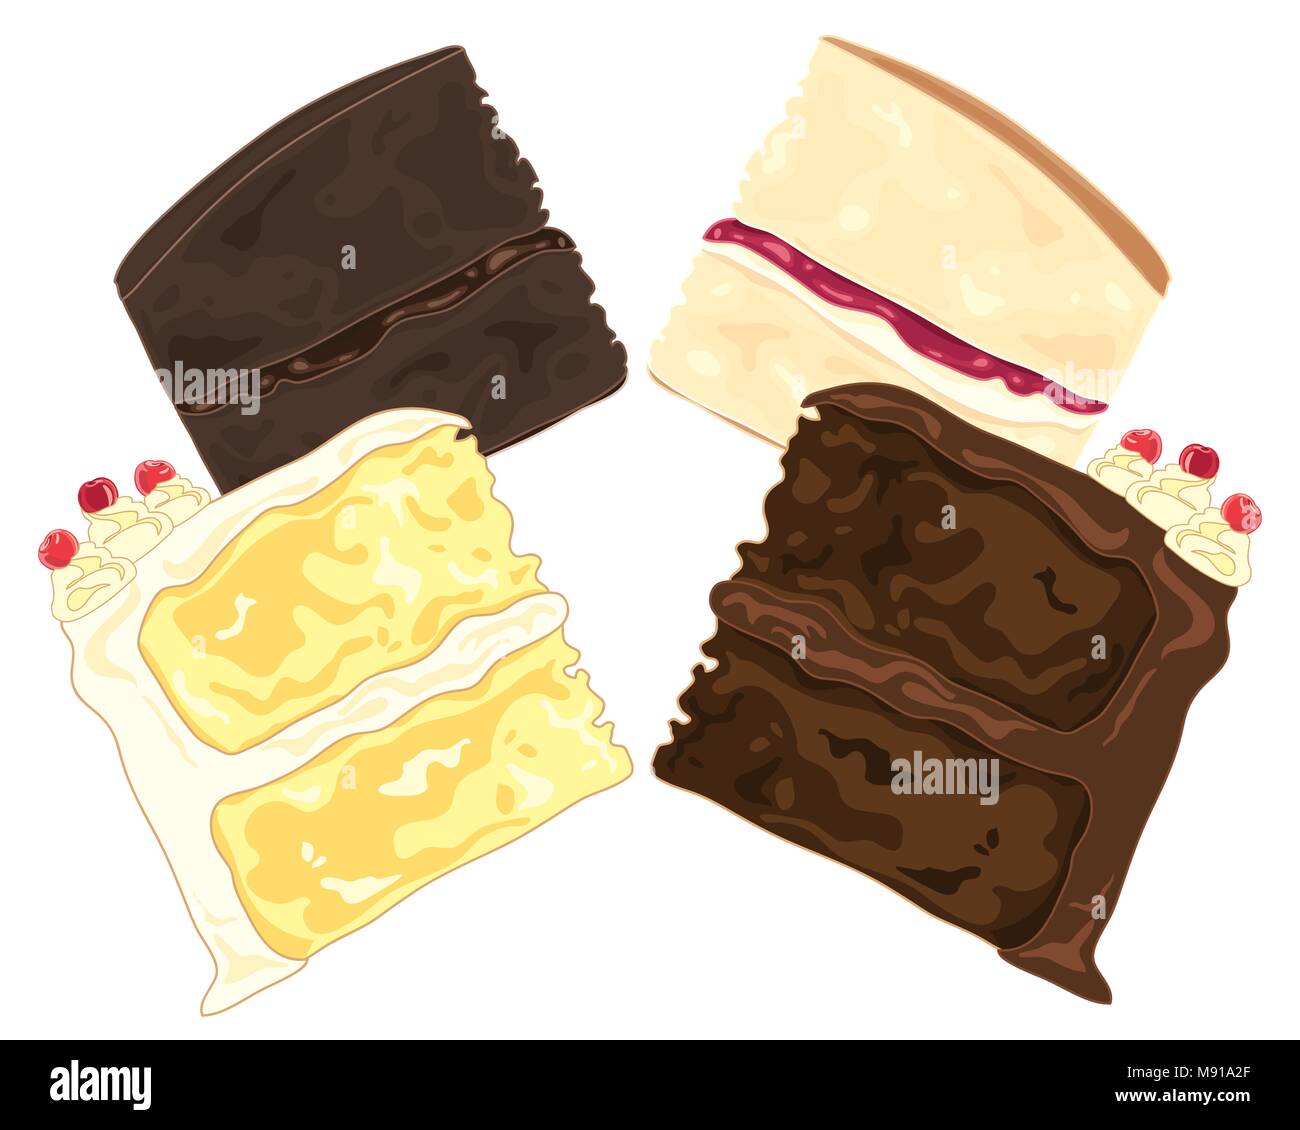 Un vecteur illustration en format eps 8 de Dark and Light tranches de gâteau sandwich avec crème swirl et garnir de cerises sur fond blanc Illustration de Vecteur